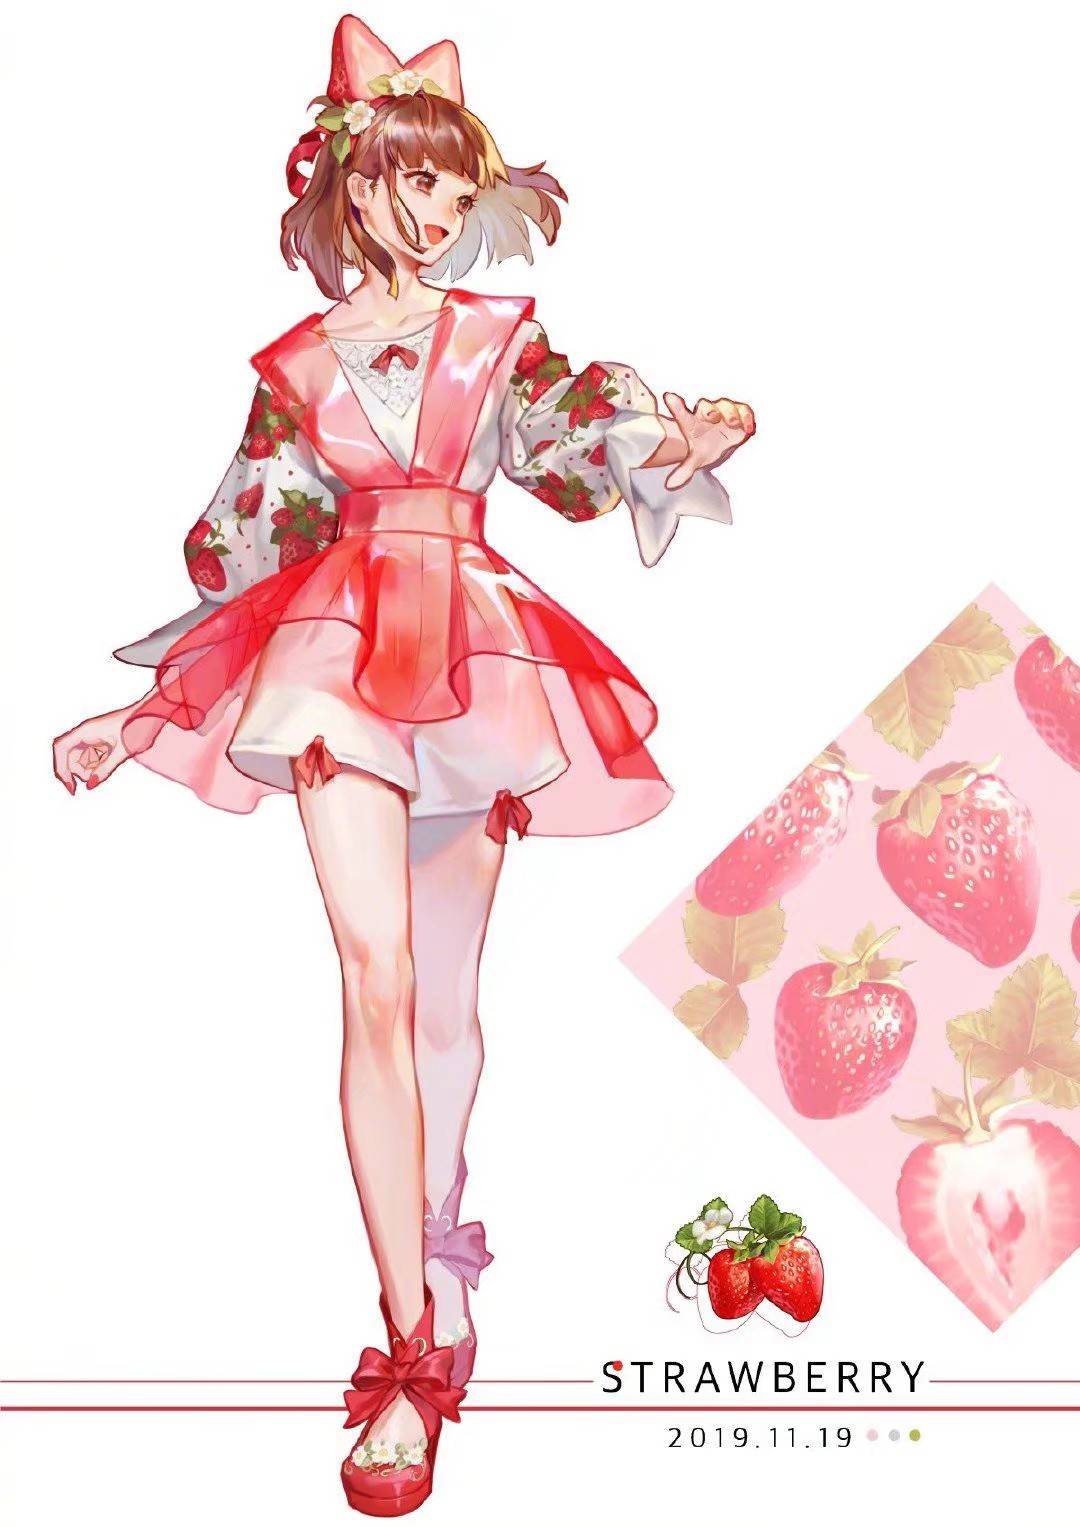 万物皆可拟人,日本画师将水果娘化了,我最喜欢草莓小姐